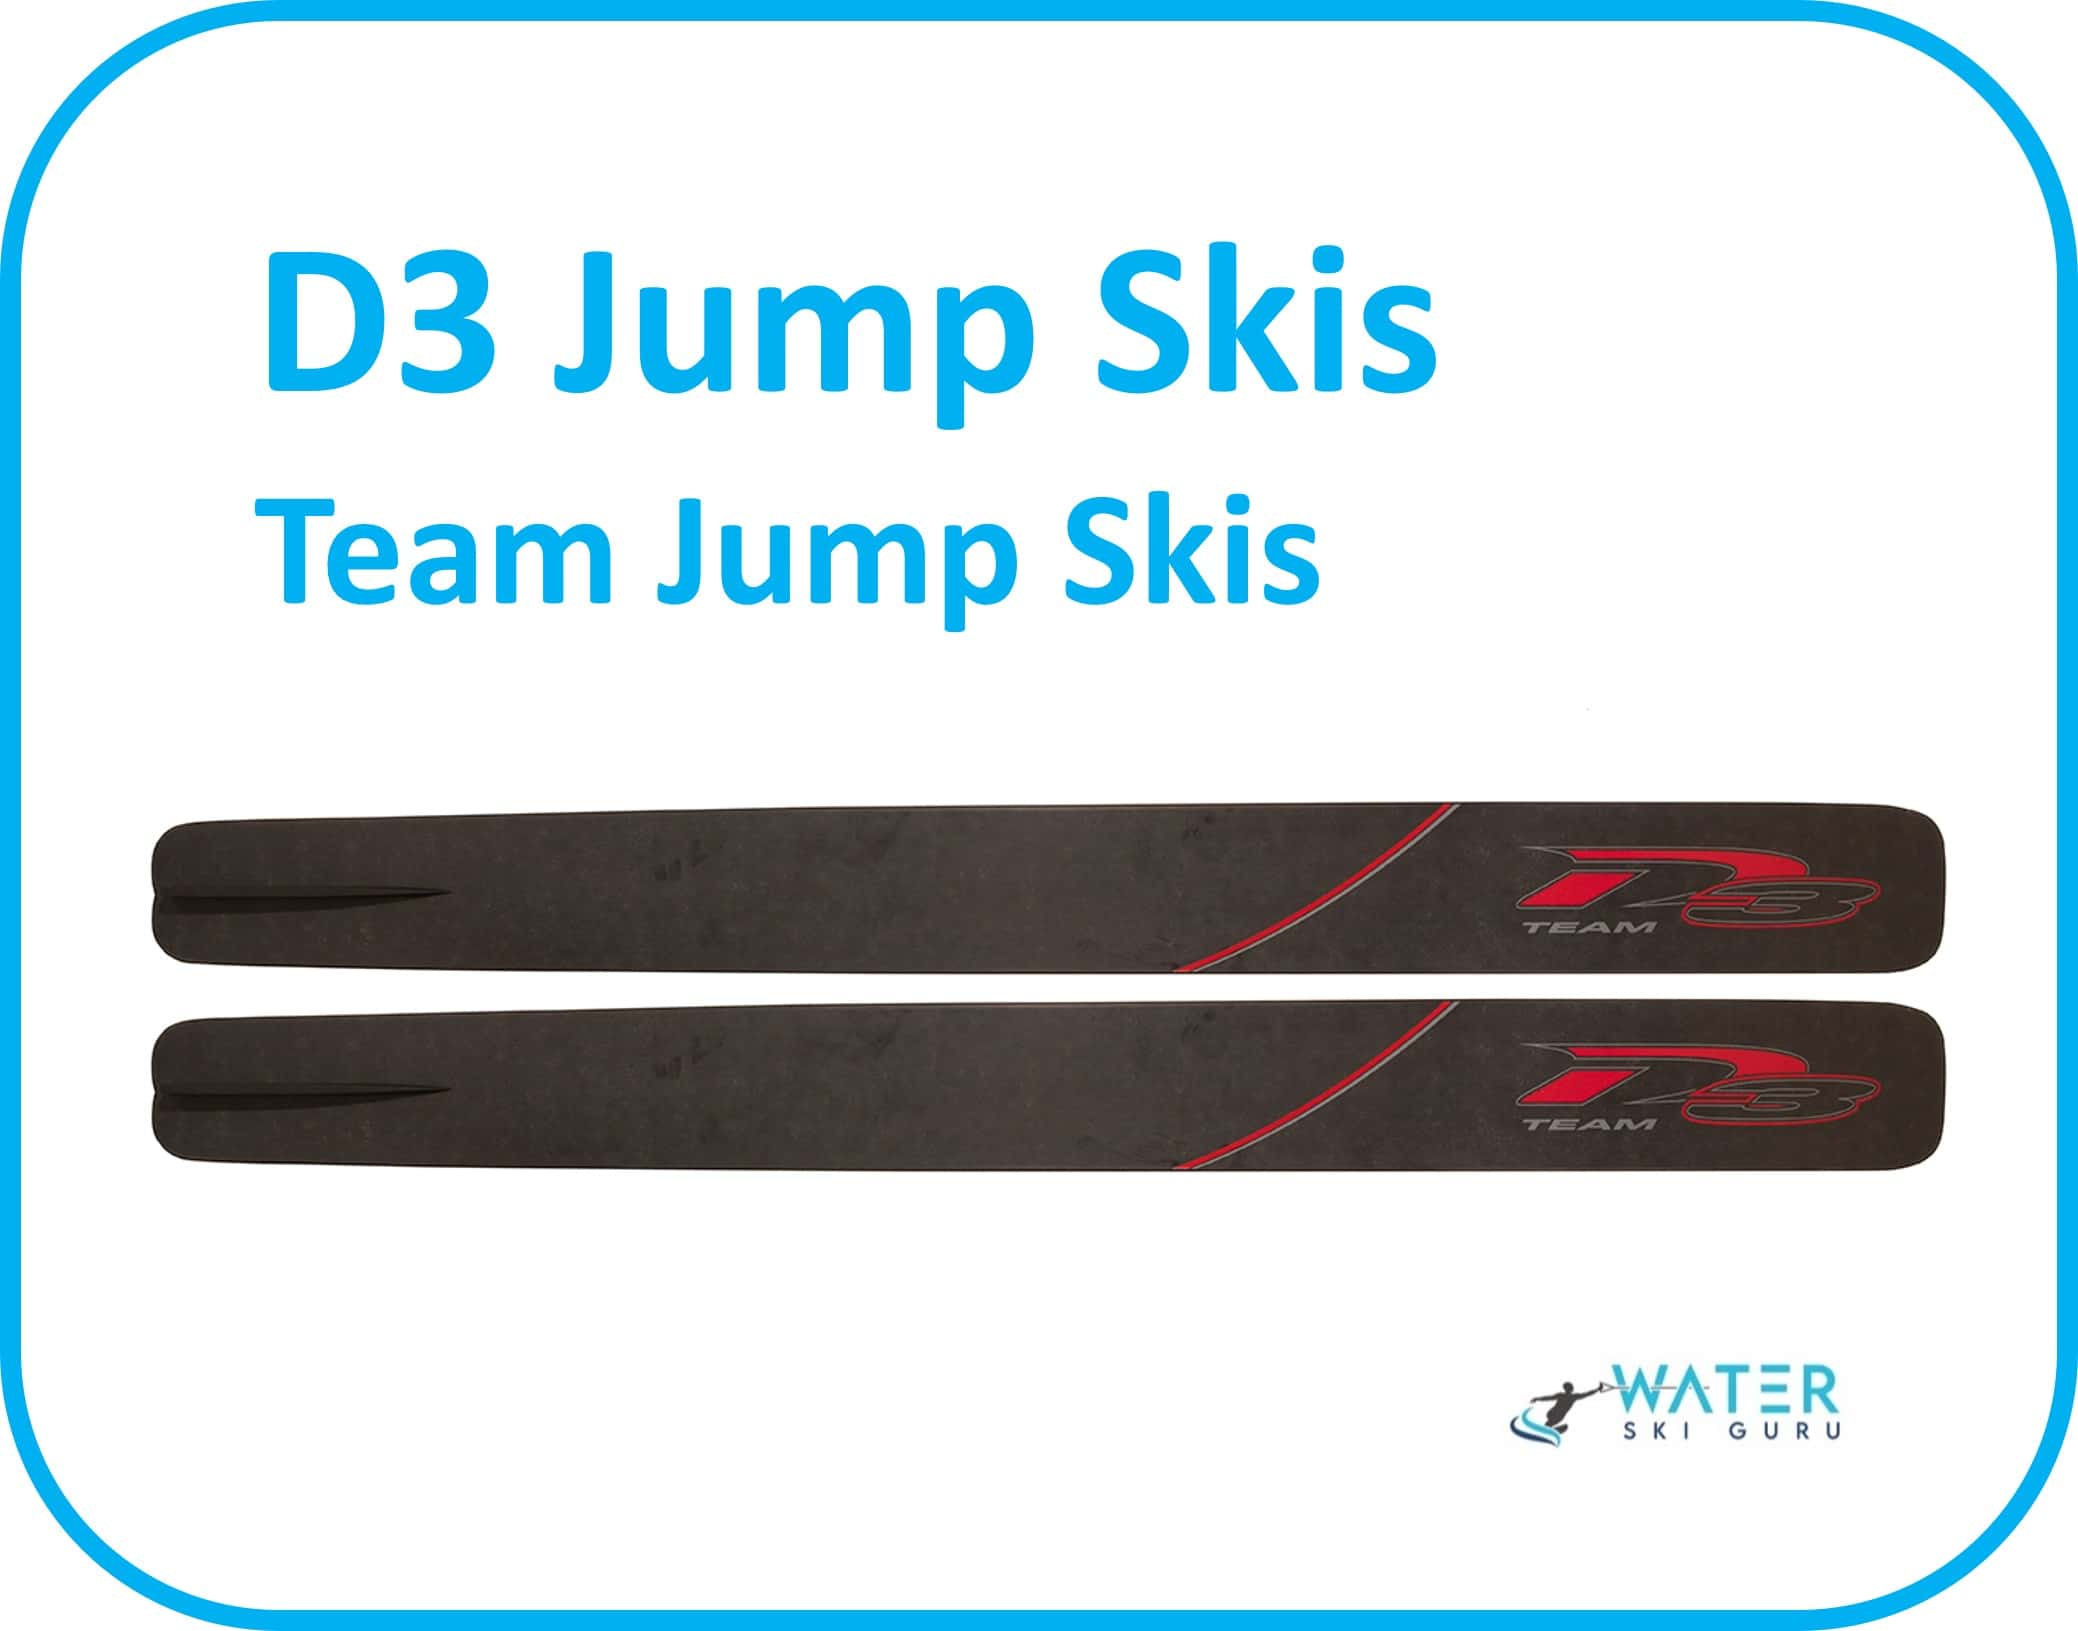 D3 Jump Skis Team Jump Skis